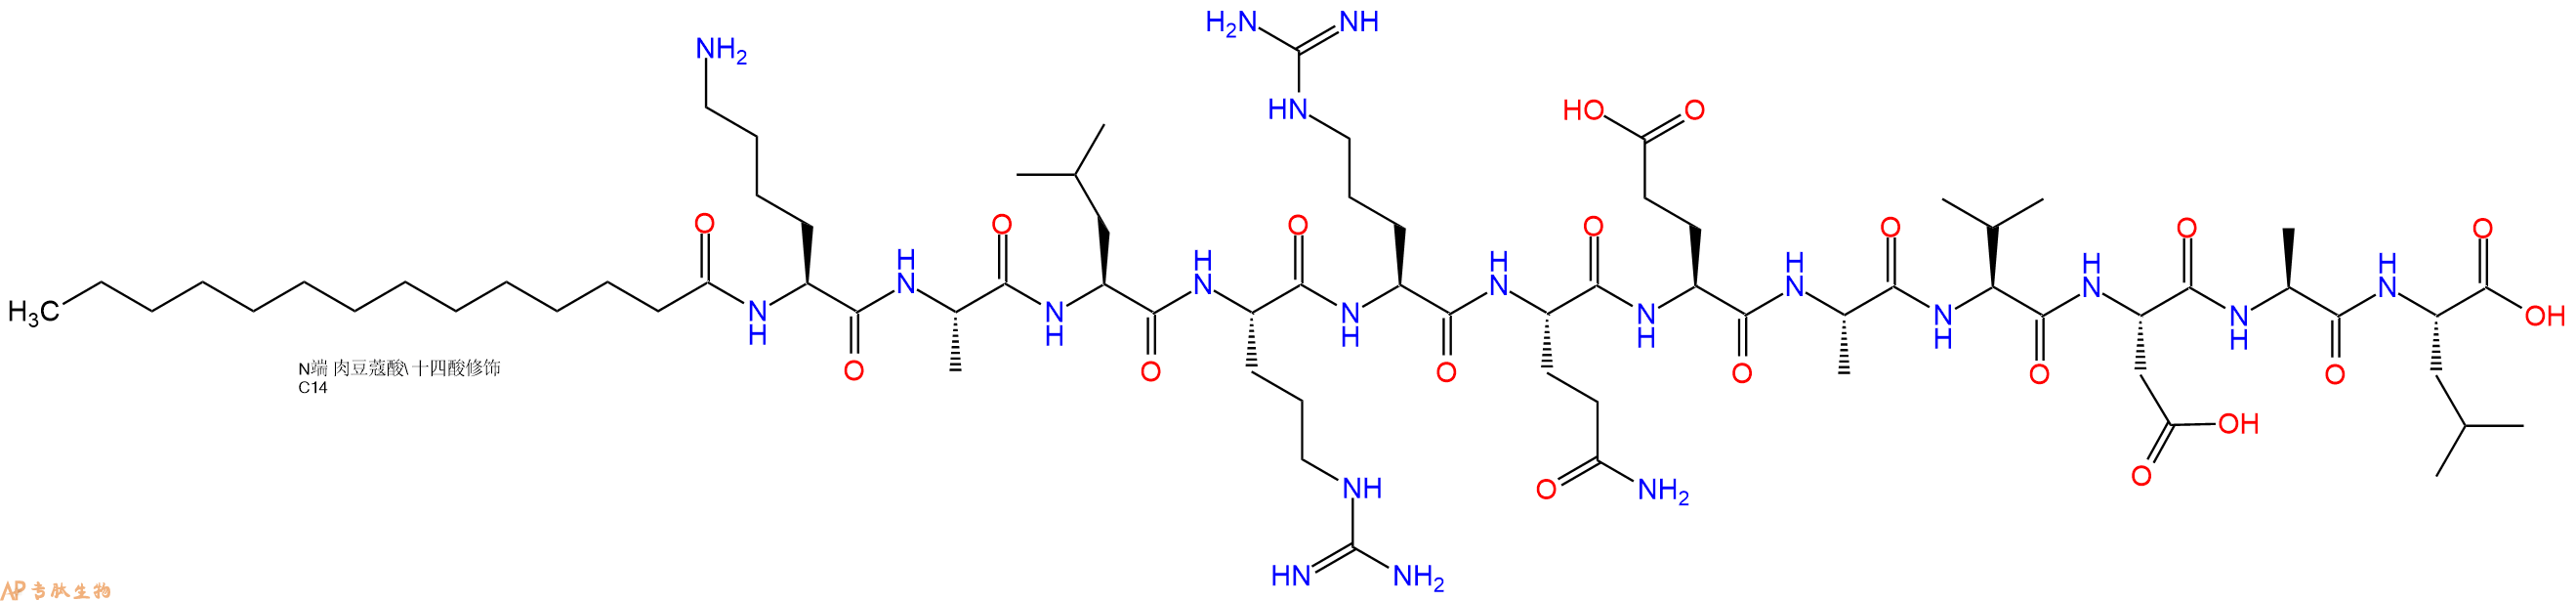 专肽生物产品肉豆蔻酰化的Autocamtide-2-相关抑制肽、Autocamtide-2-related inhibitory peptide, myristoylated201422-04-0